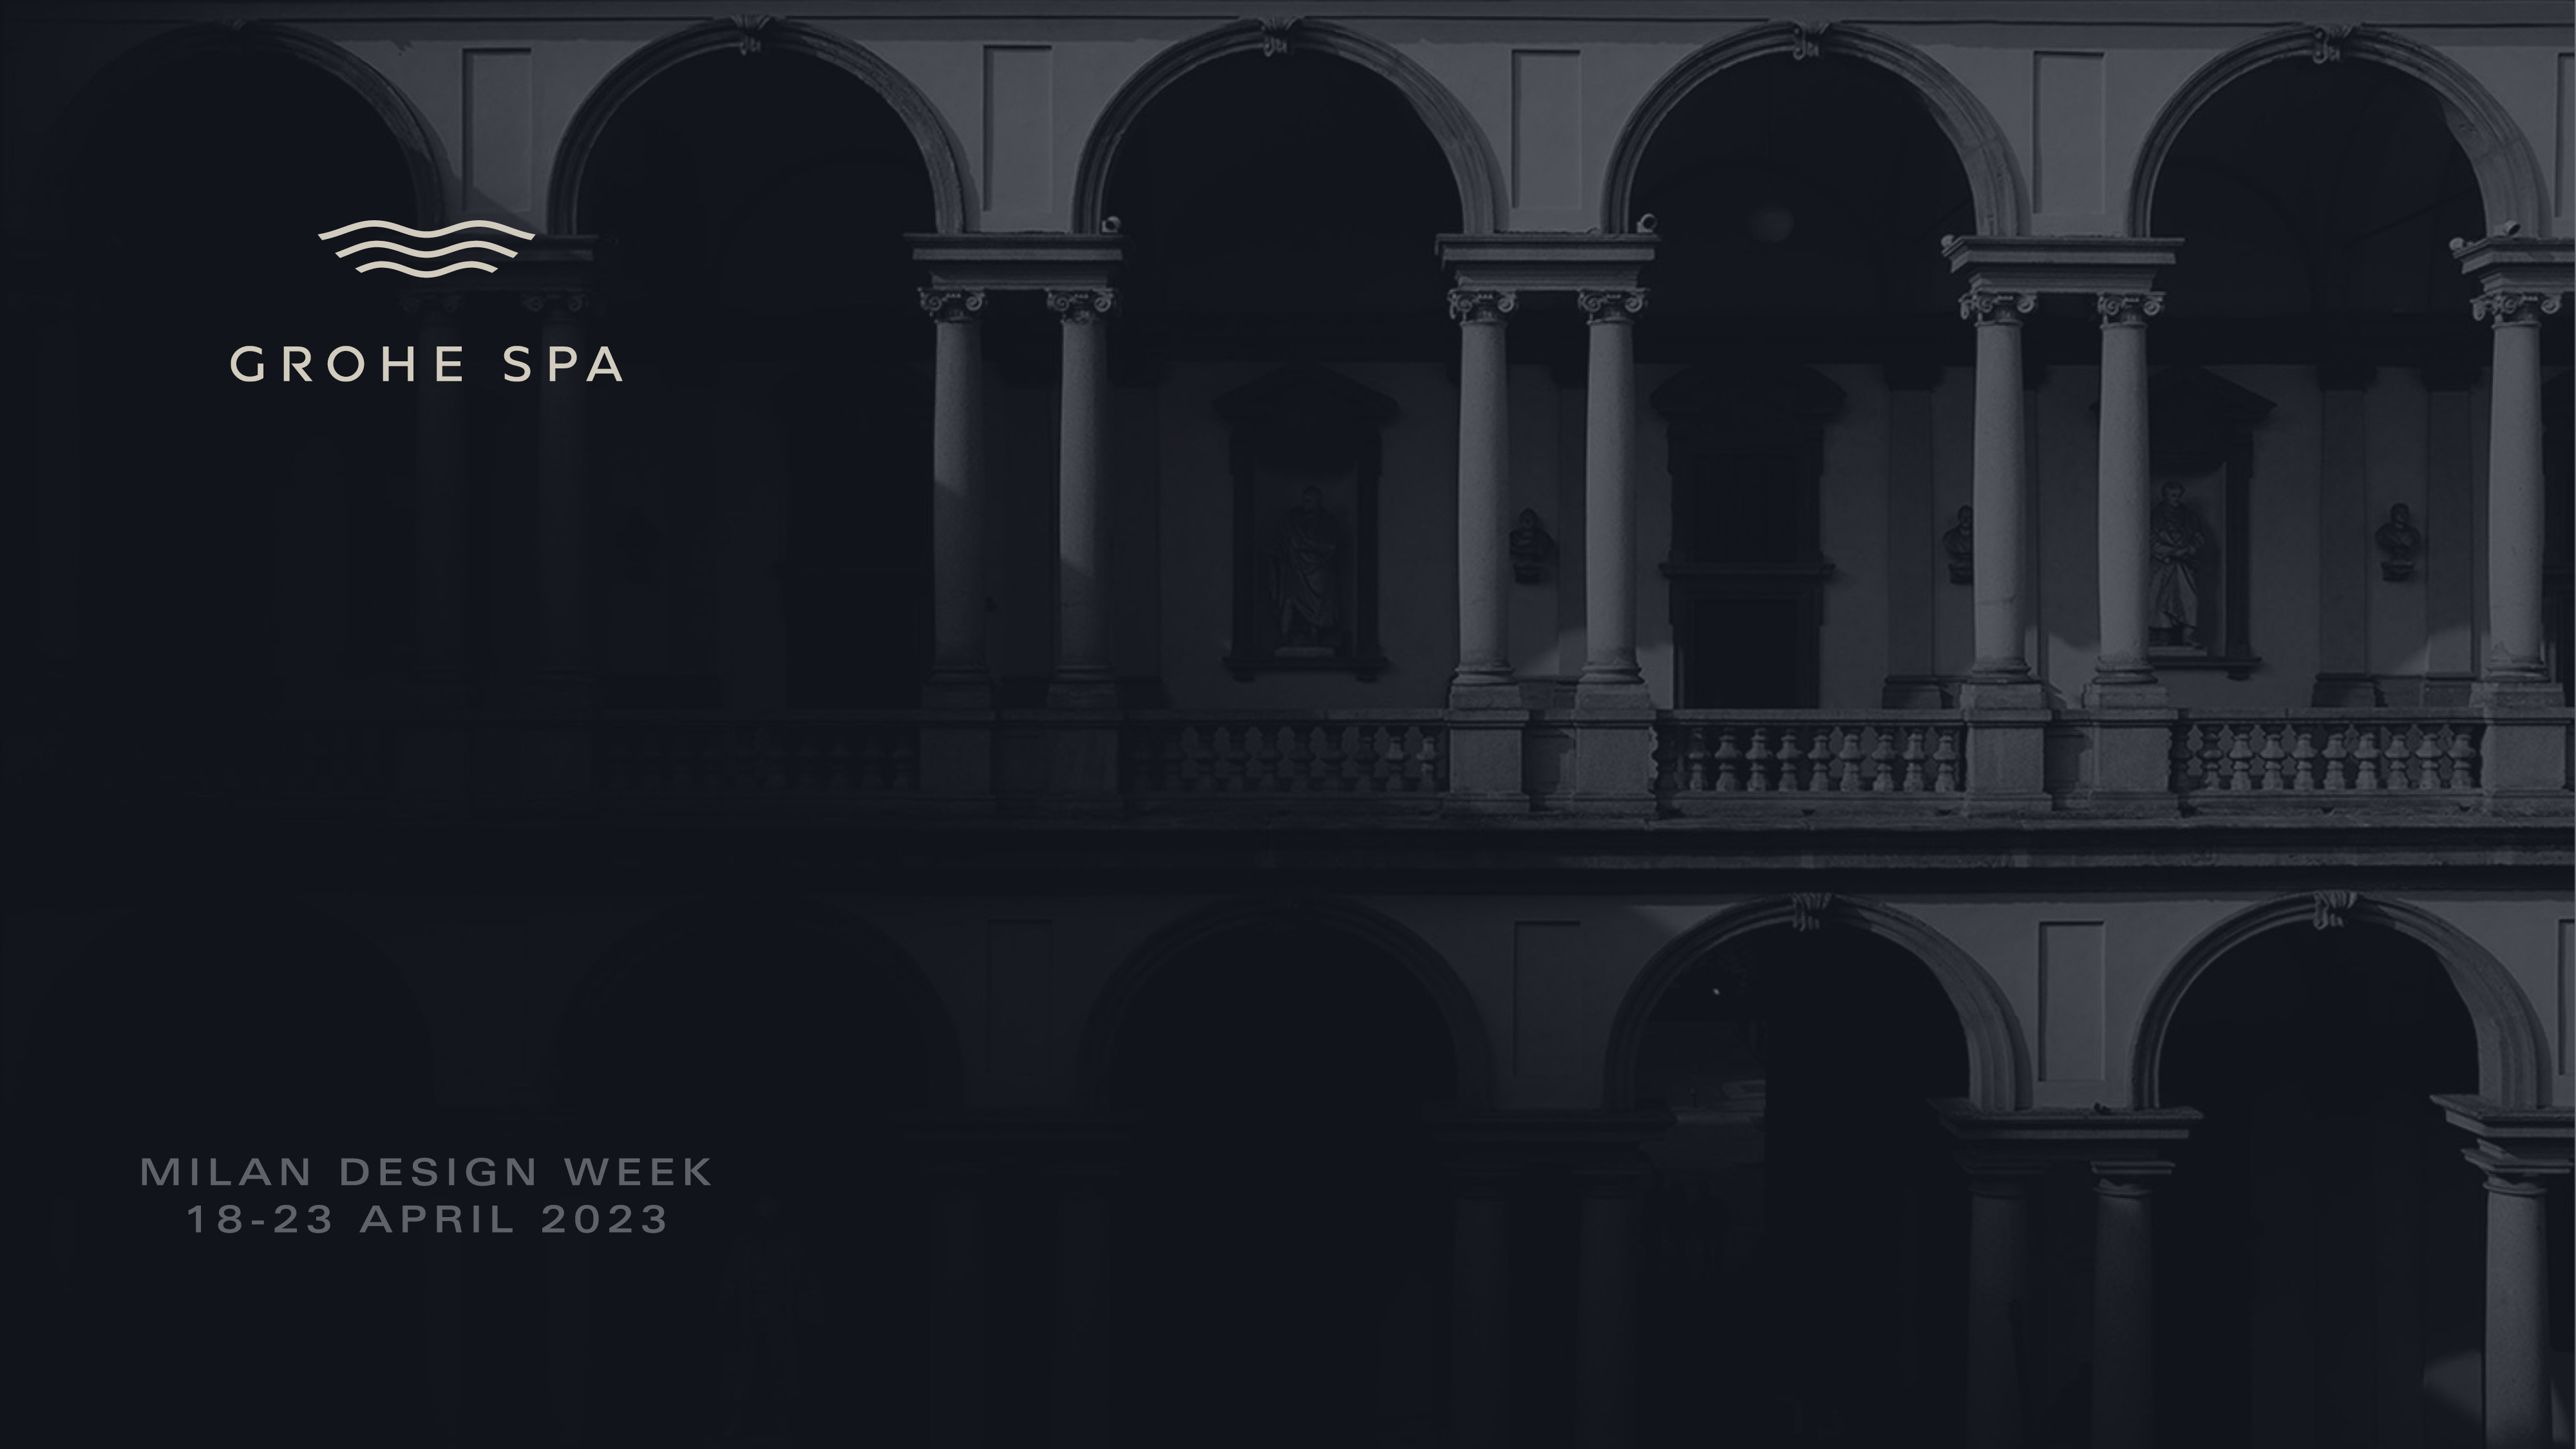 GROHE SPA Milan Design Week